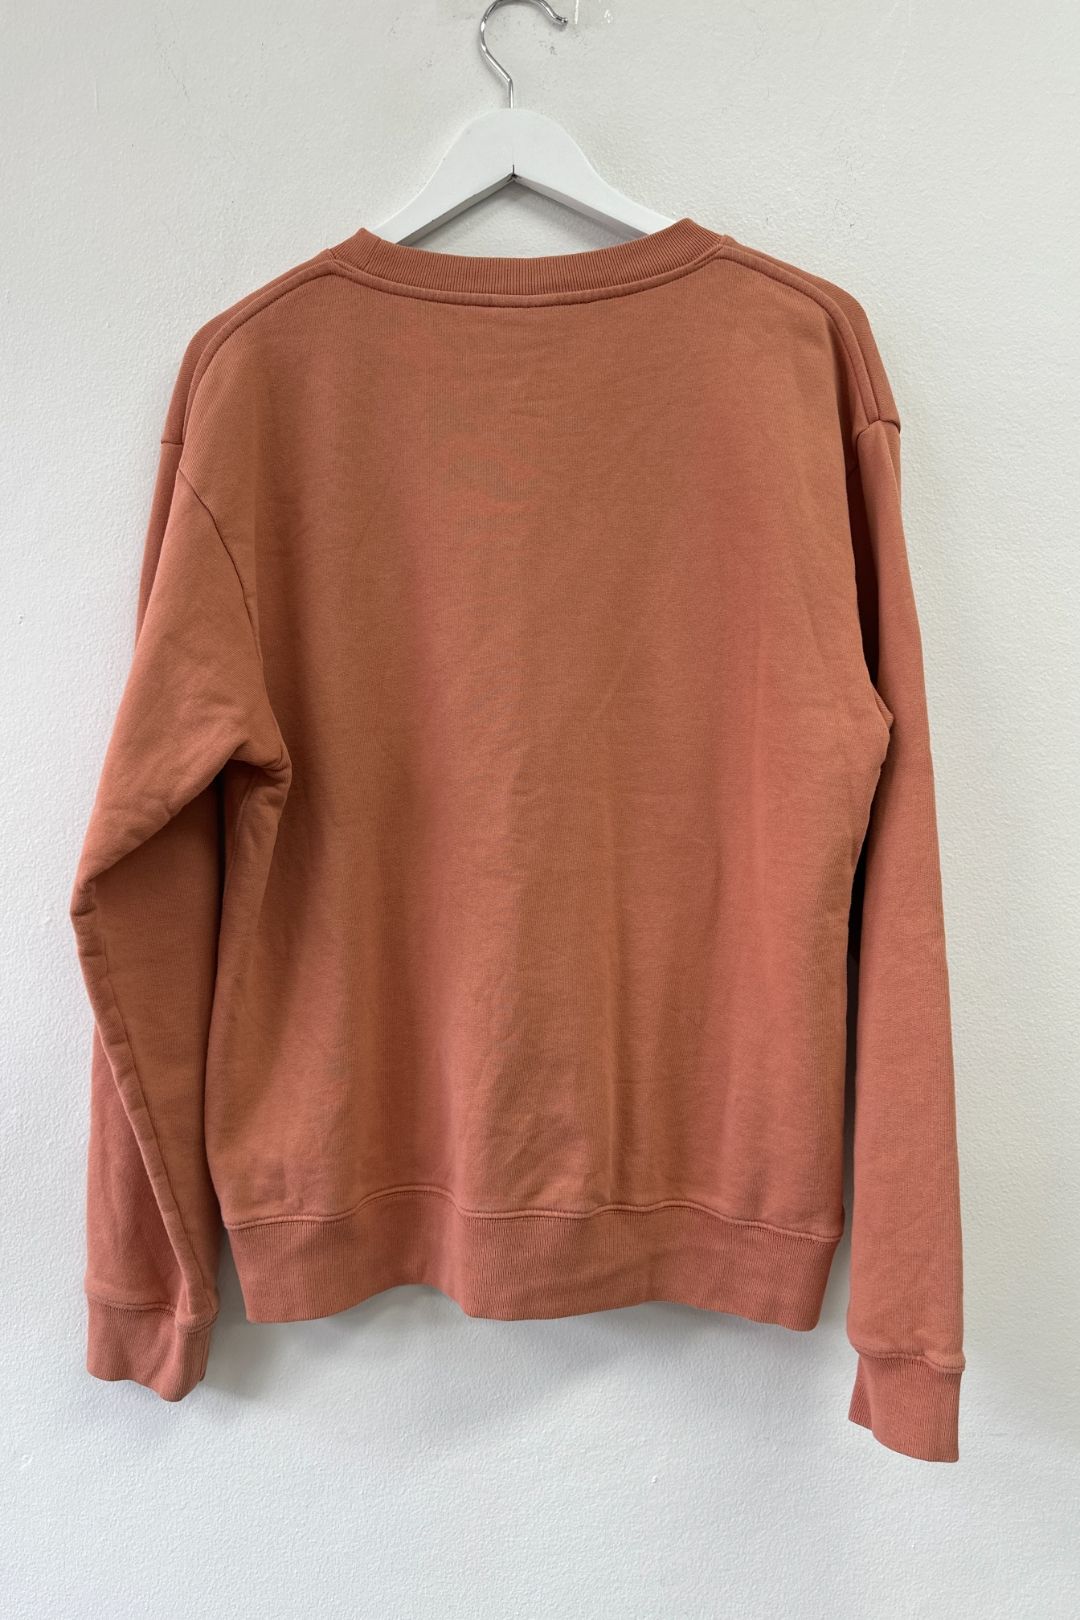 Dries Van Noten Orange Crew Neck Sweater